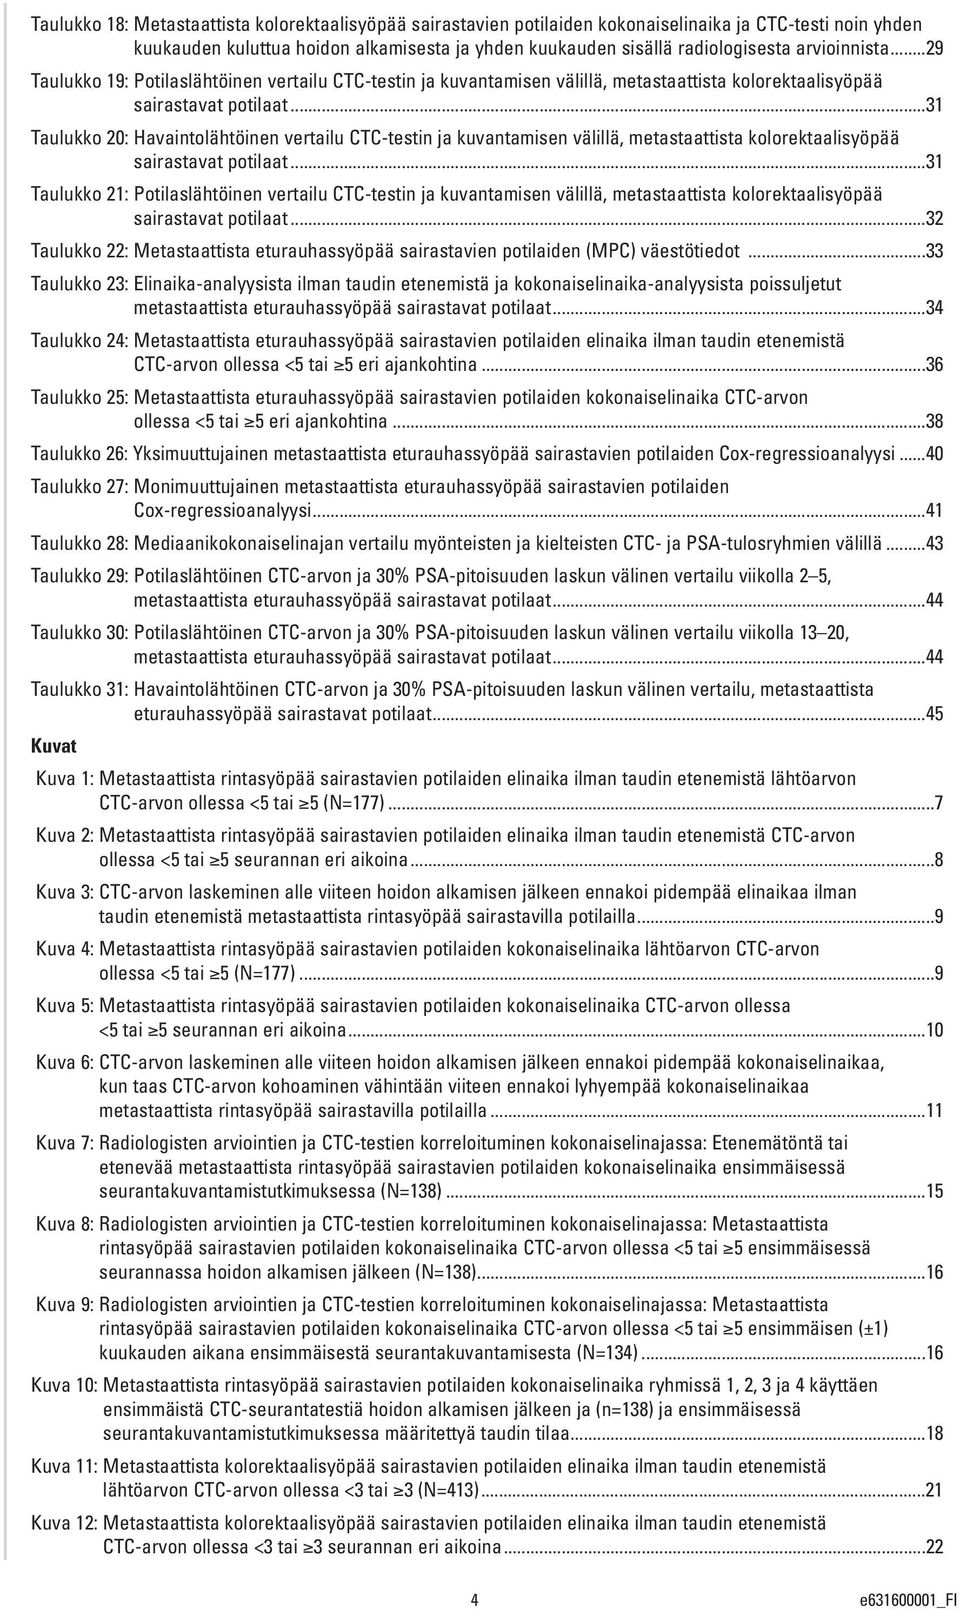 ..31 Taulukko 20: Havaintolähtöinen vertailu CTC-testin ja kuvantamisen välillä, metastaattista kolorektaalisyöpää sairastavat potilaat.